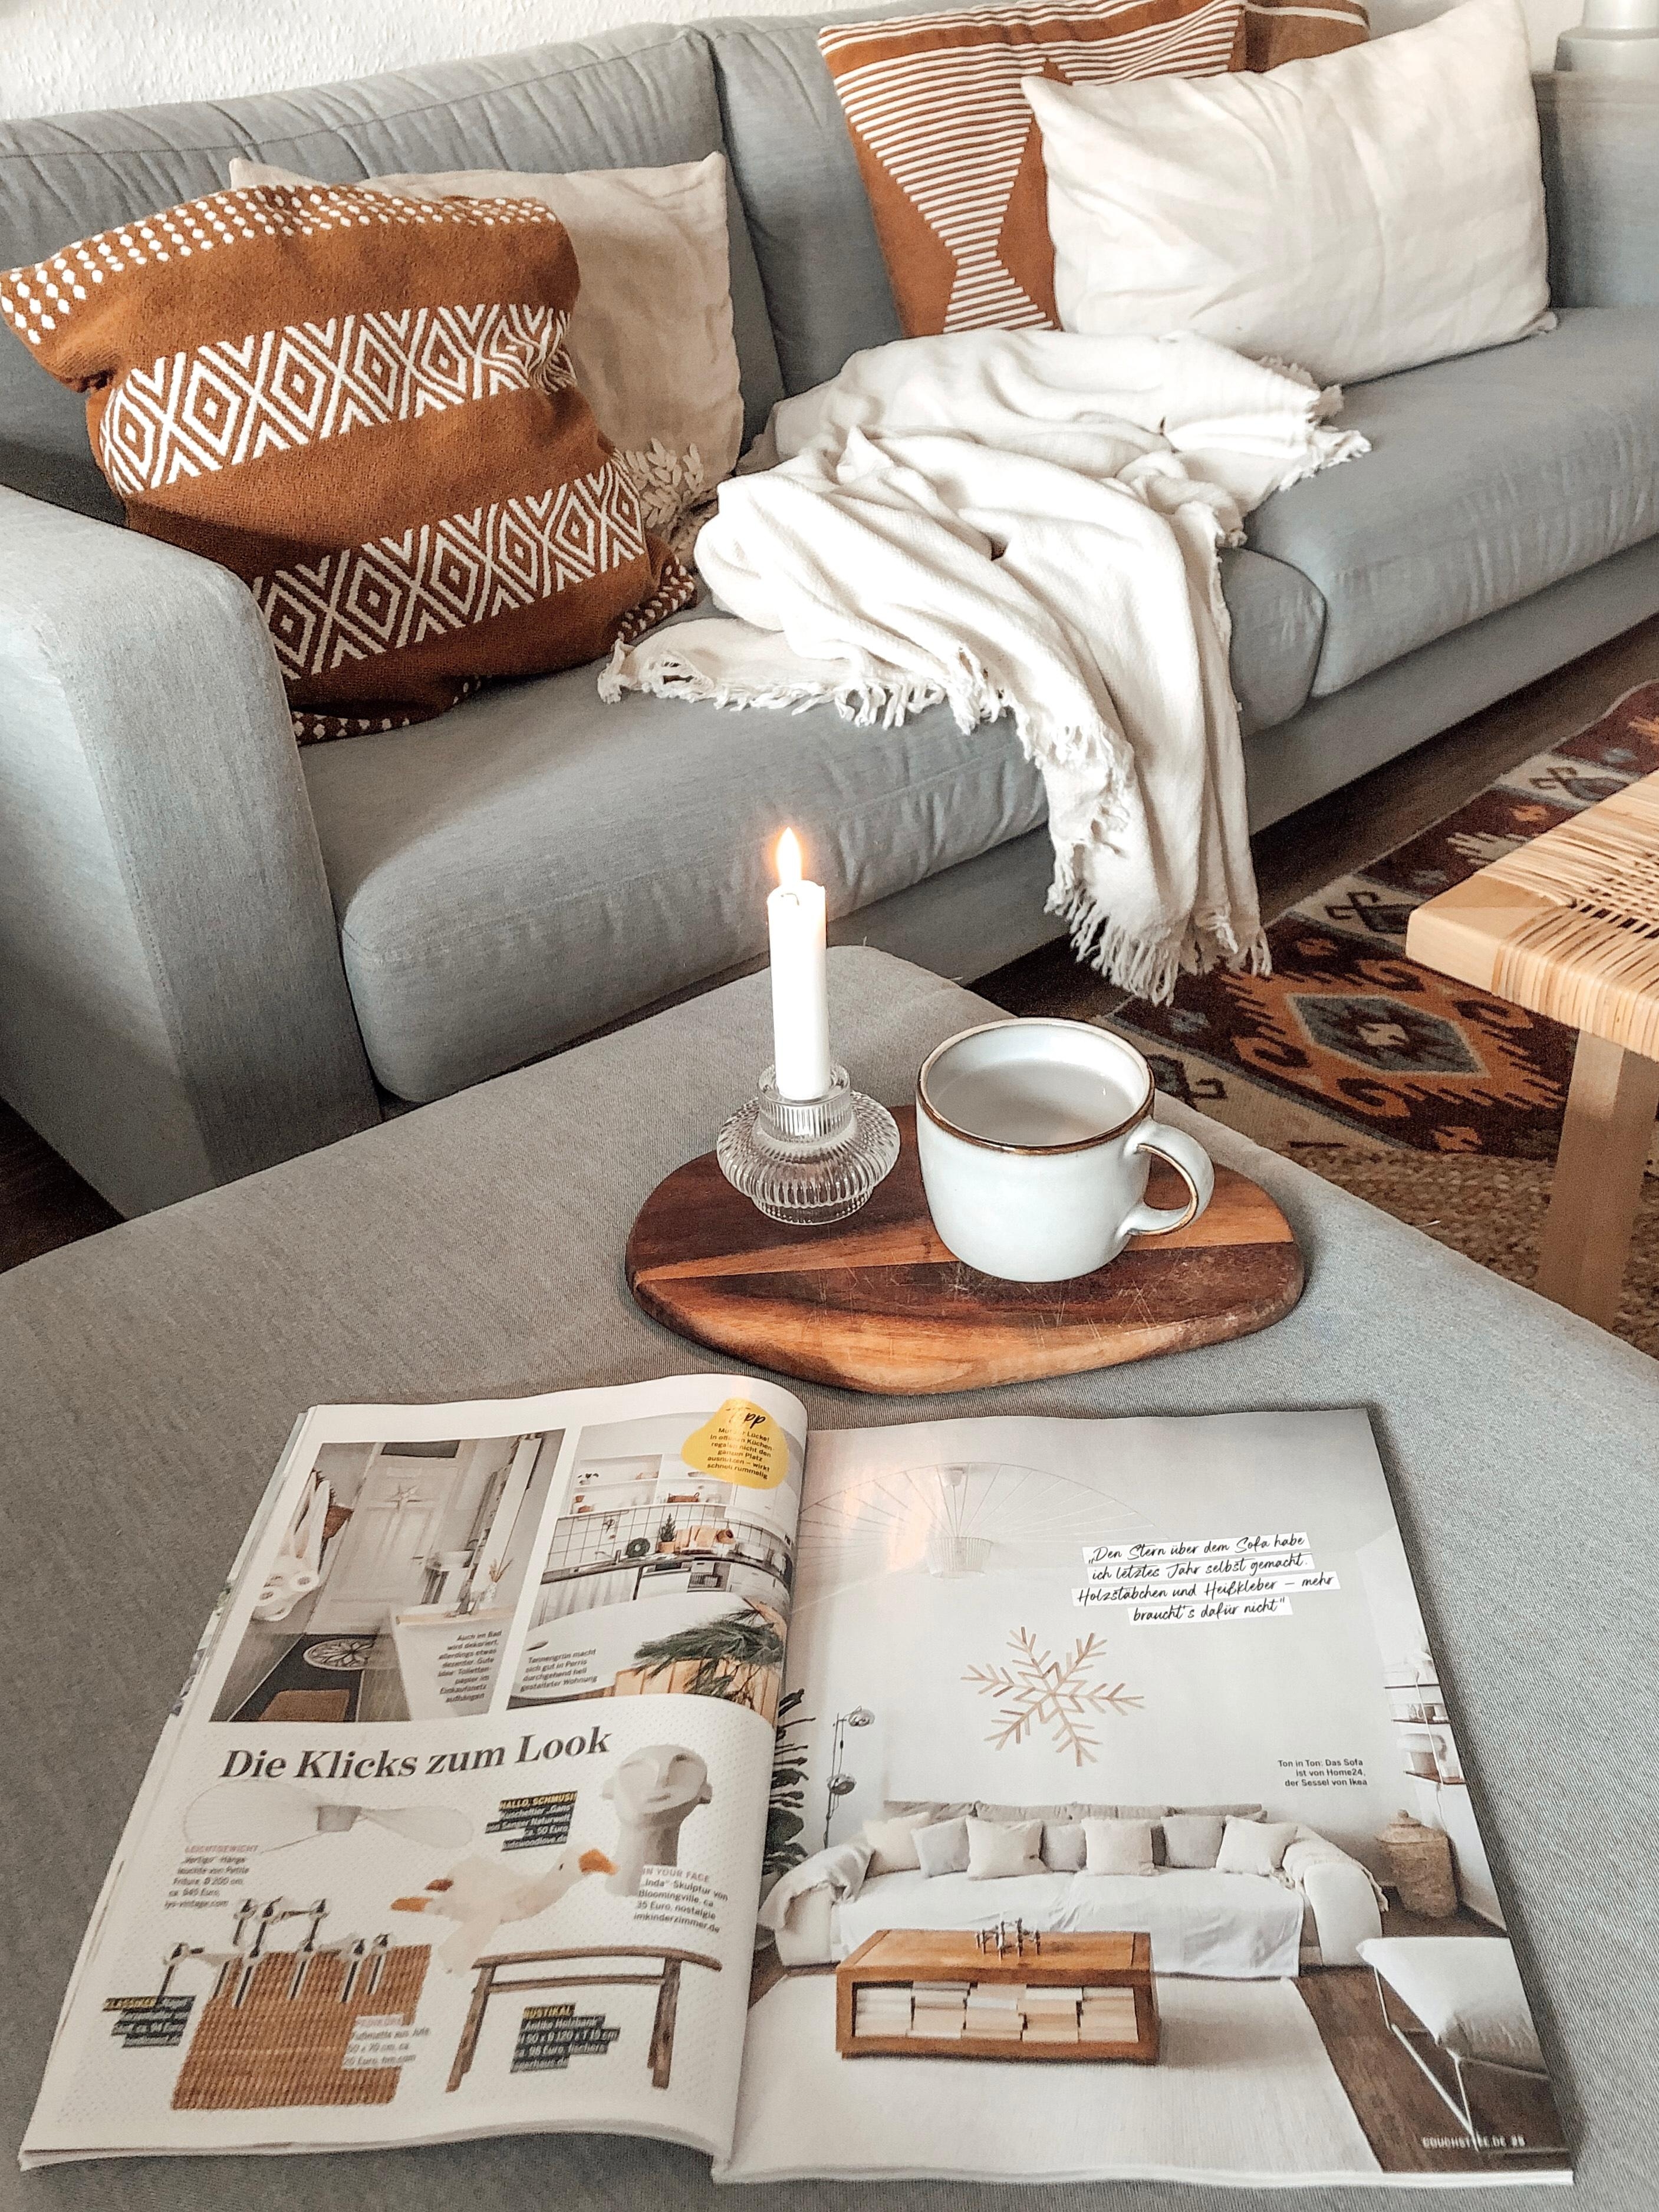 Teekränzchen mit der #couch
#hygge #couchmagazin #tee #kerzenschein